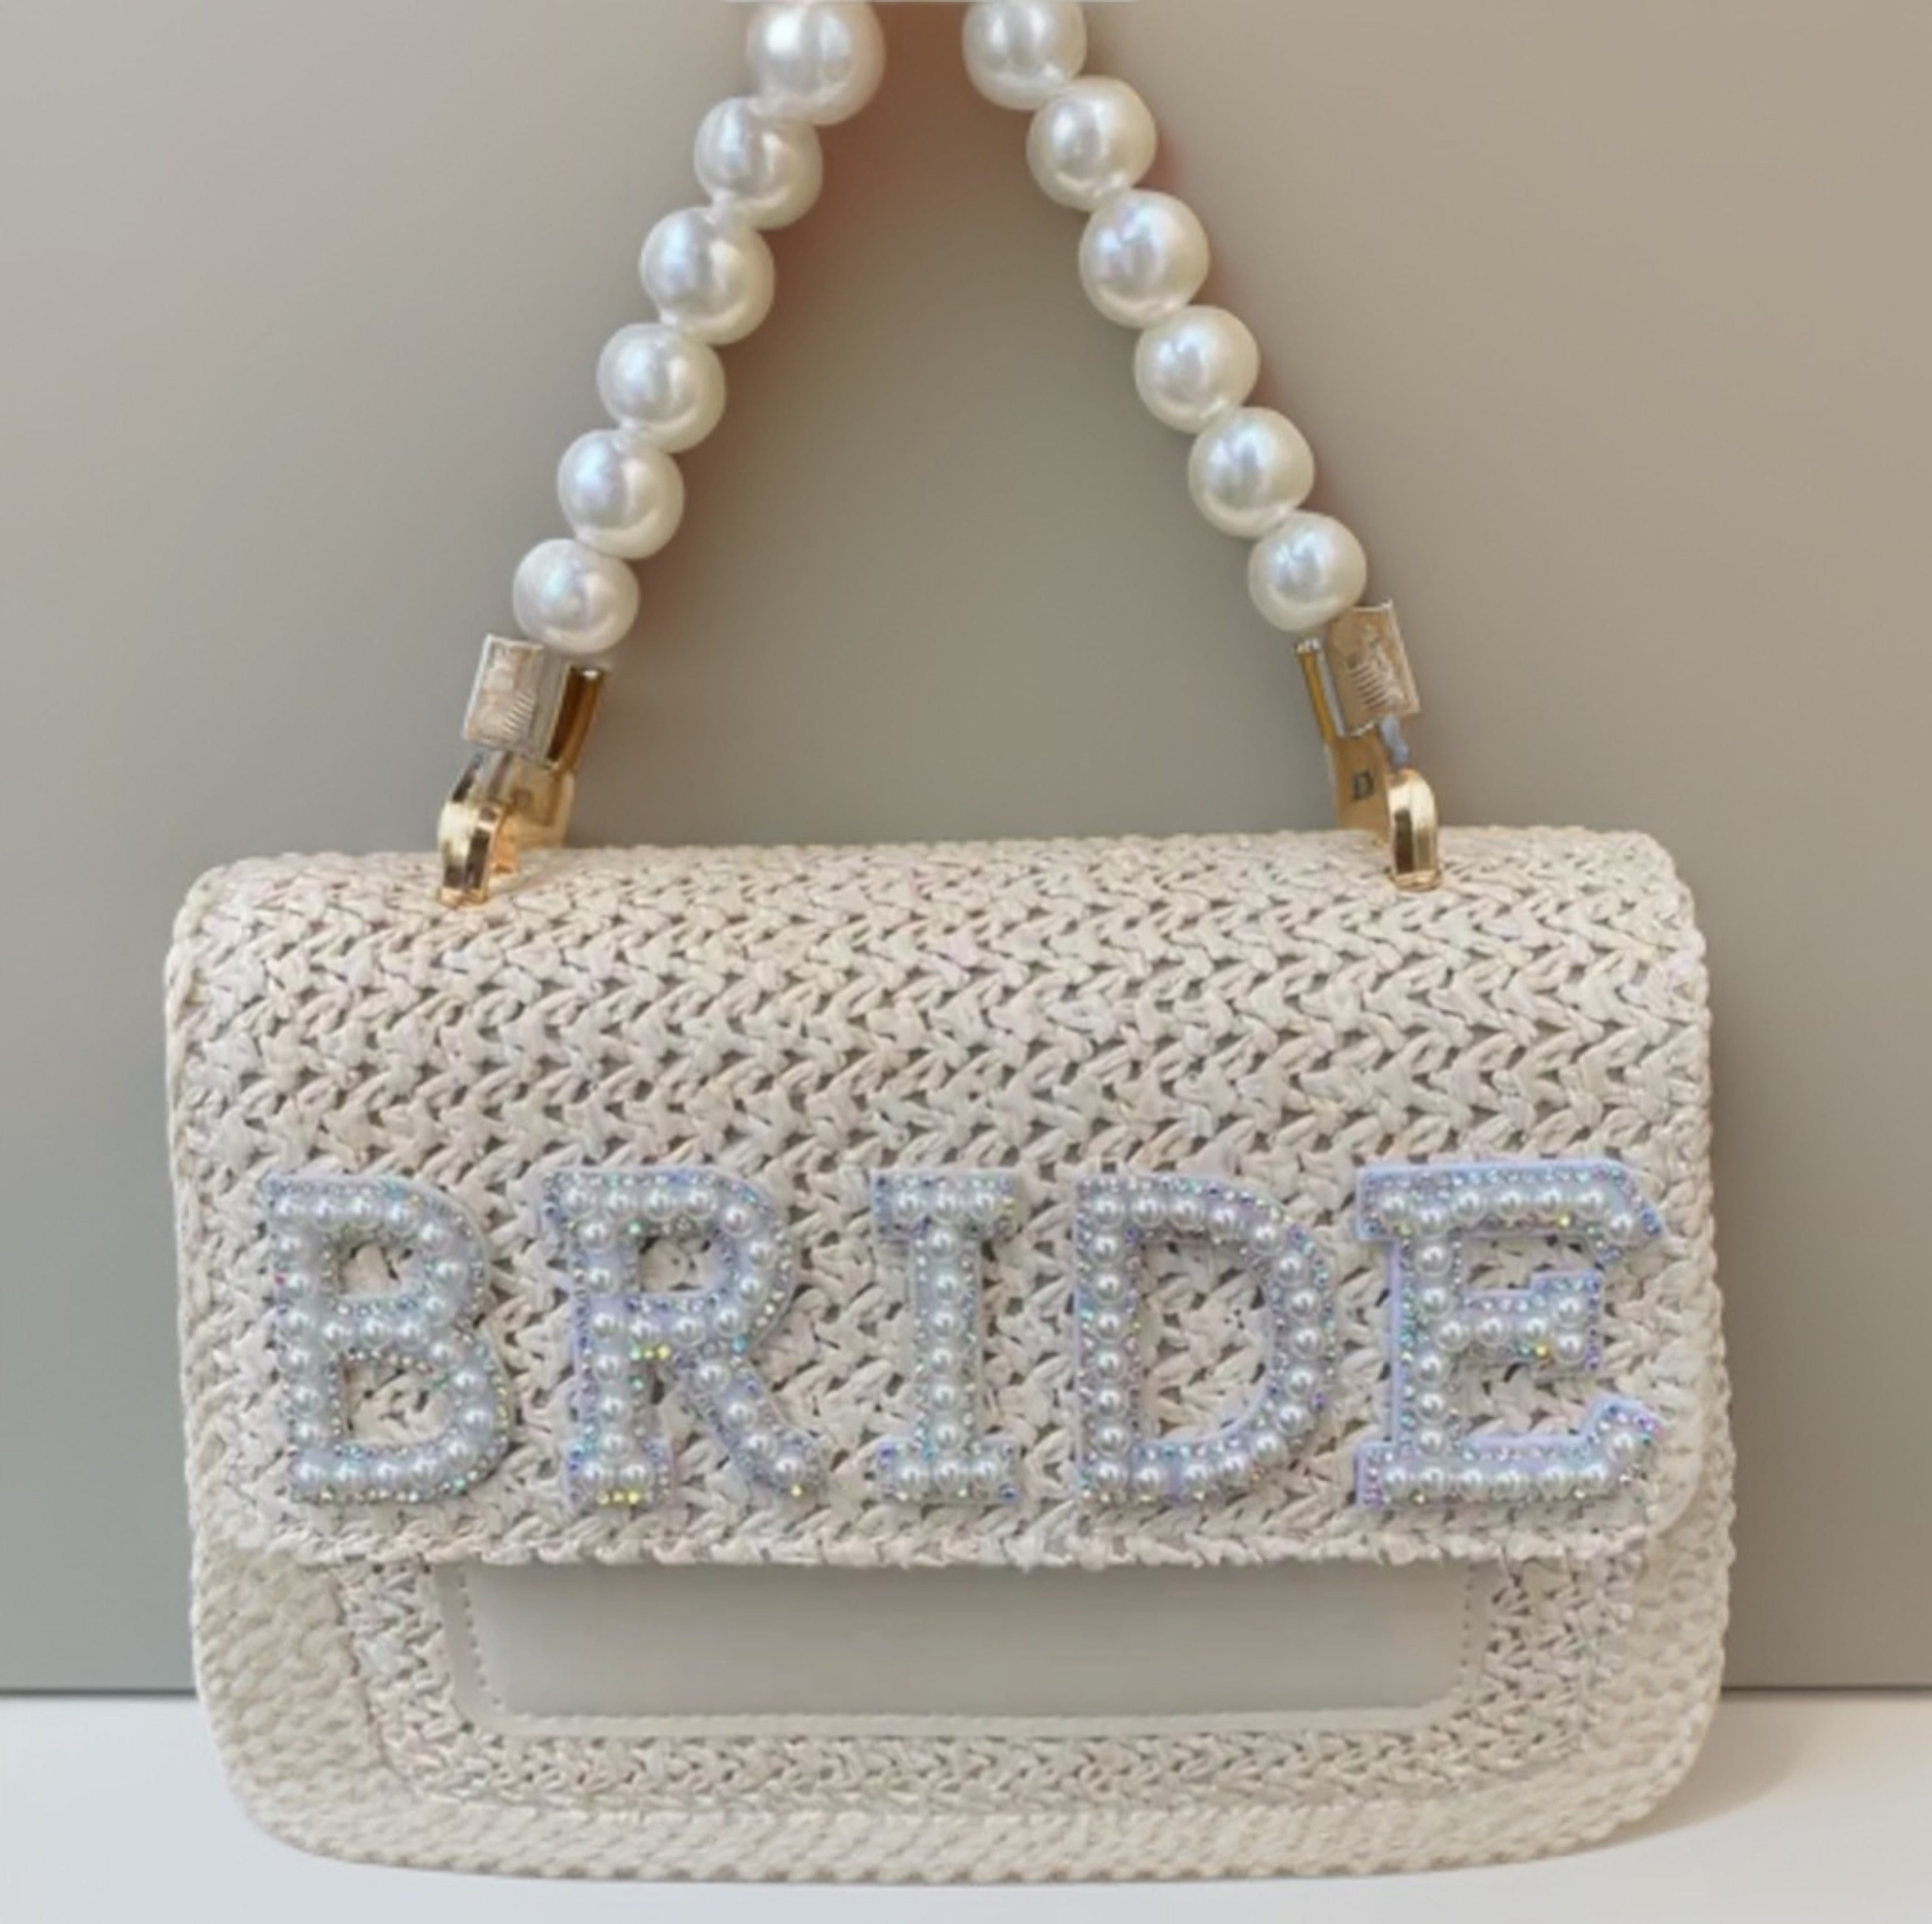 Crystal Evening Clutch Bag Wedding Purse Bridal Prom Party Sparkly Dinner  Clutch Bags Rhinestone Glitter Handbag Gold